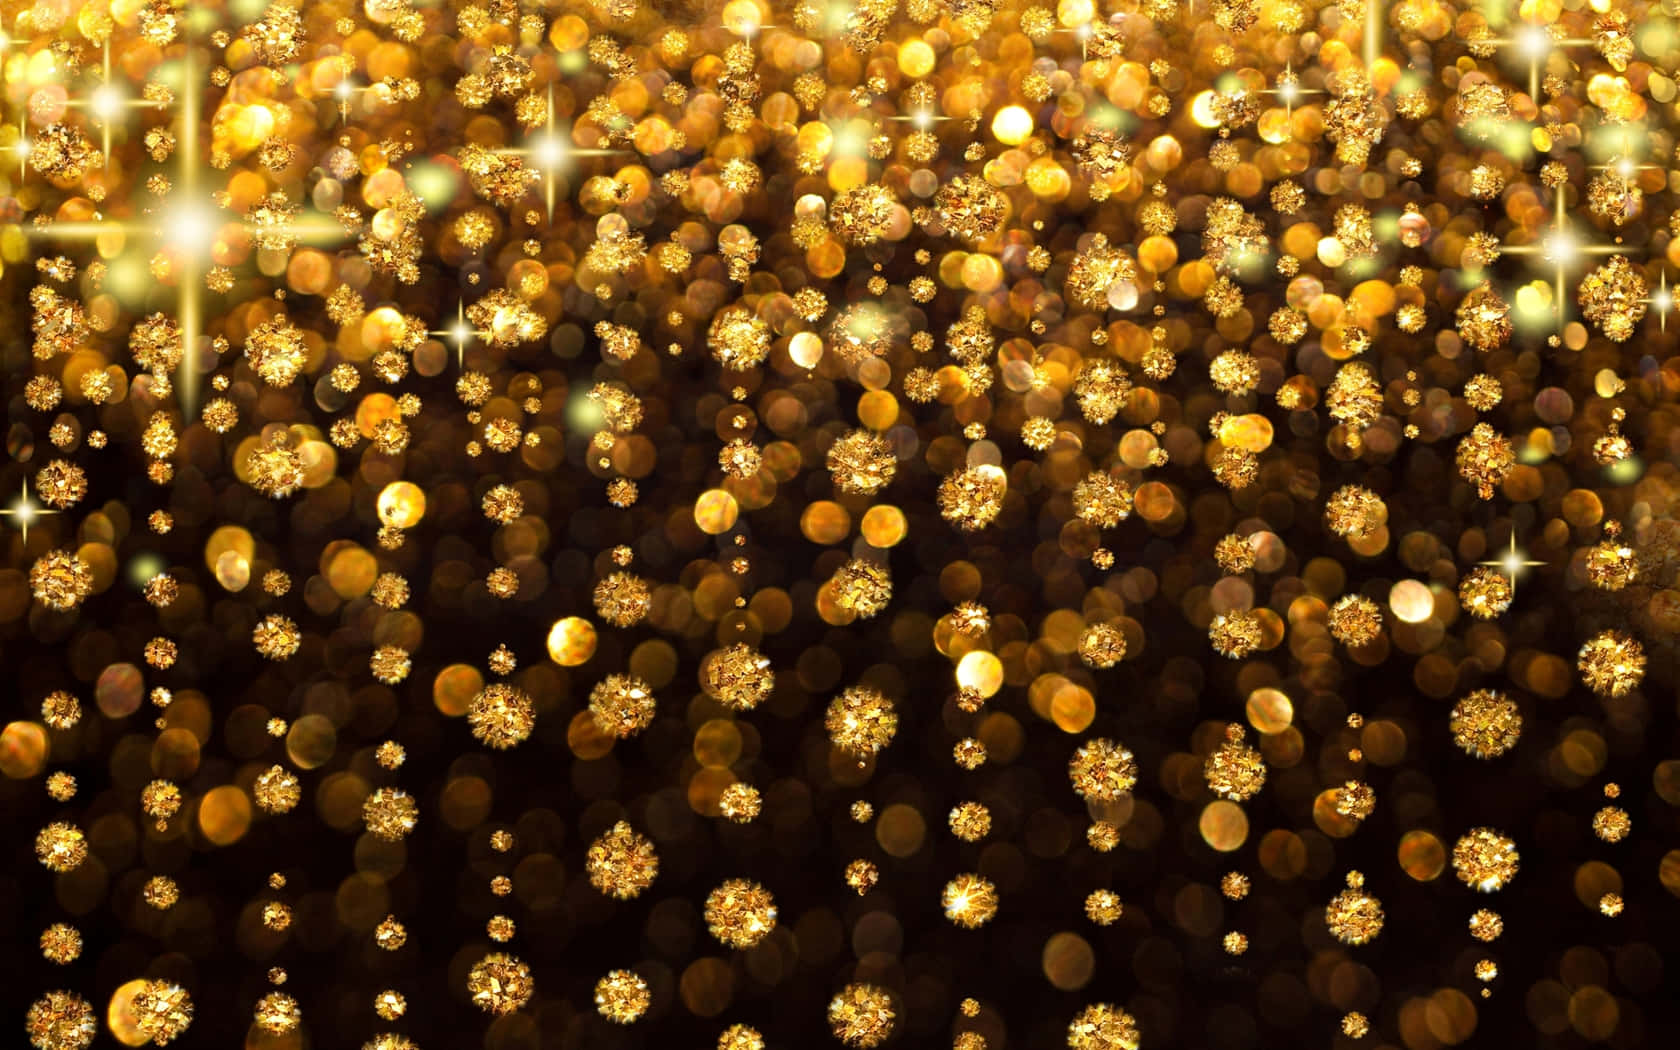 gold glitter widescreen wallpaper  Gold glitter wallpaper hd, Gold glitter  background, Sparkle wallpaper